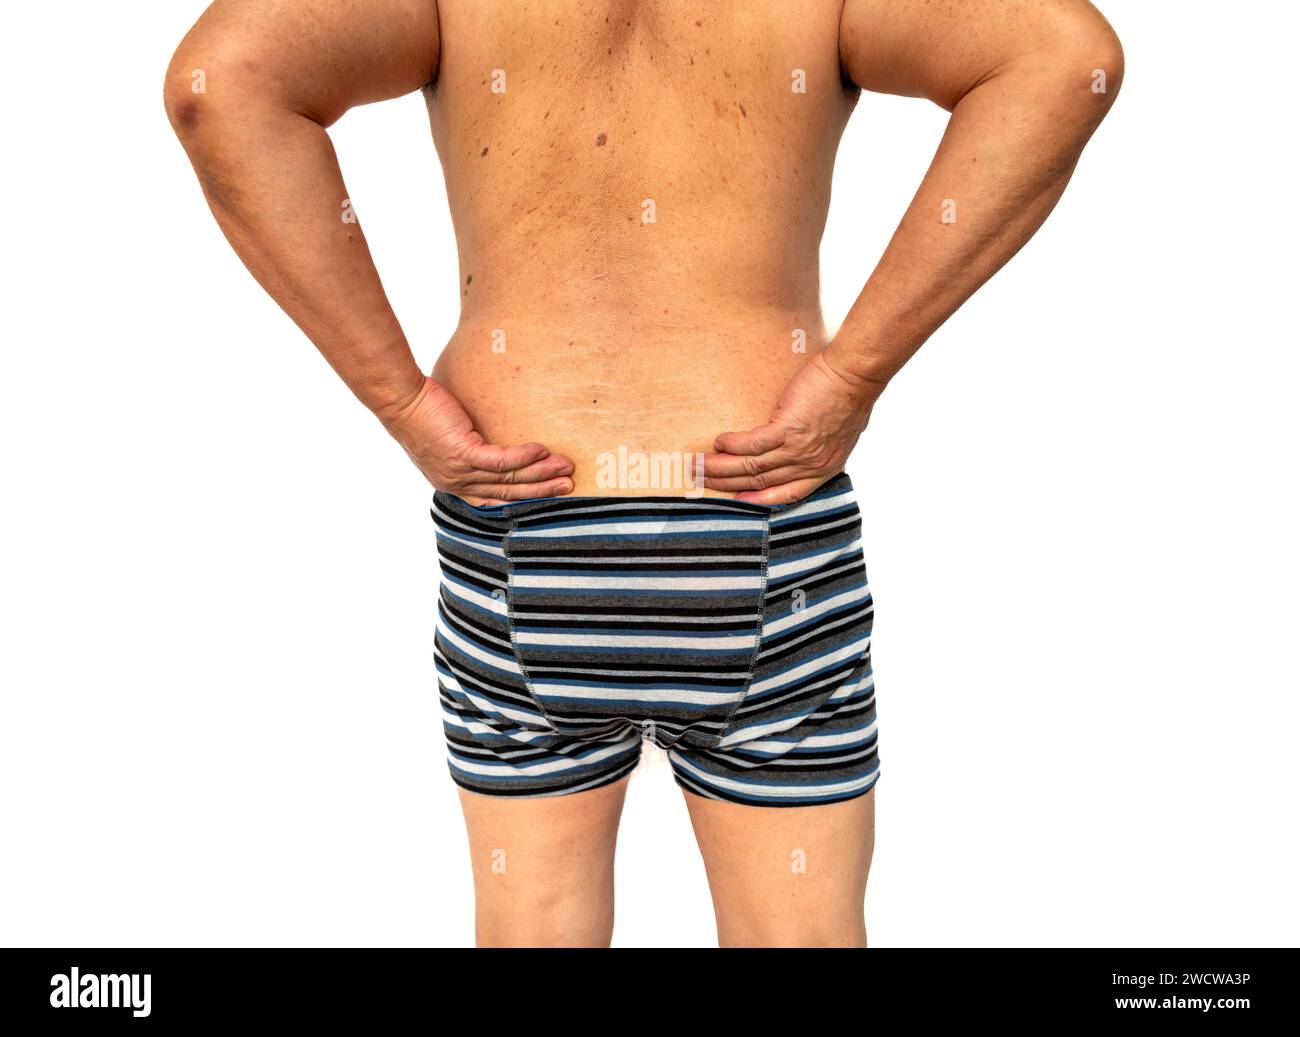 Una vista posterior completa de una persona que sufre de dolor de espalda aislado en blanco. Foto de stock